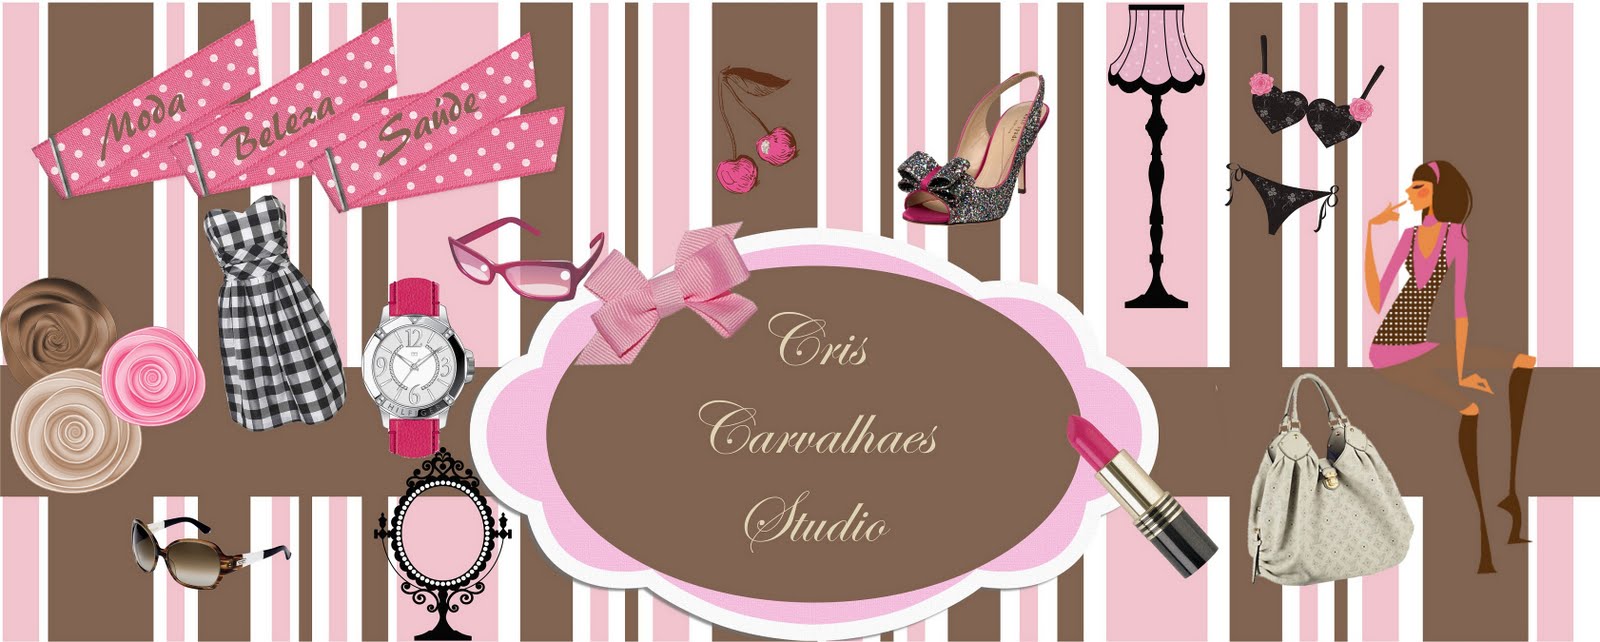 Cris Carvalhaes Studio